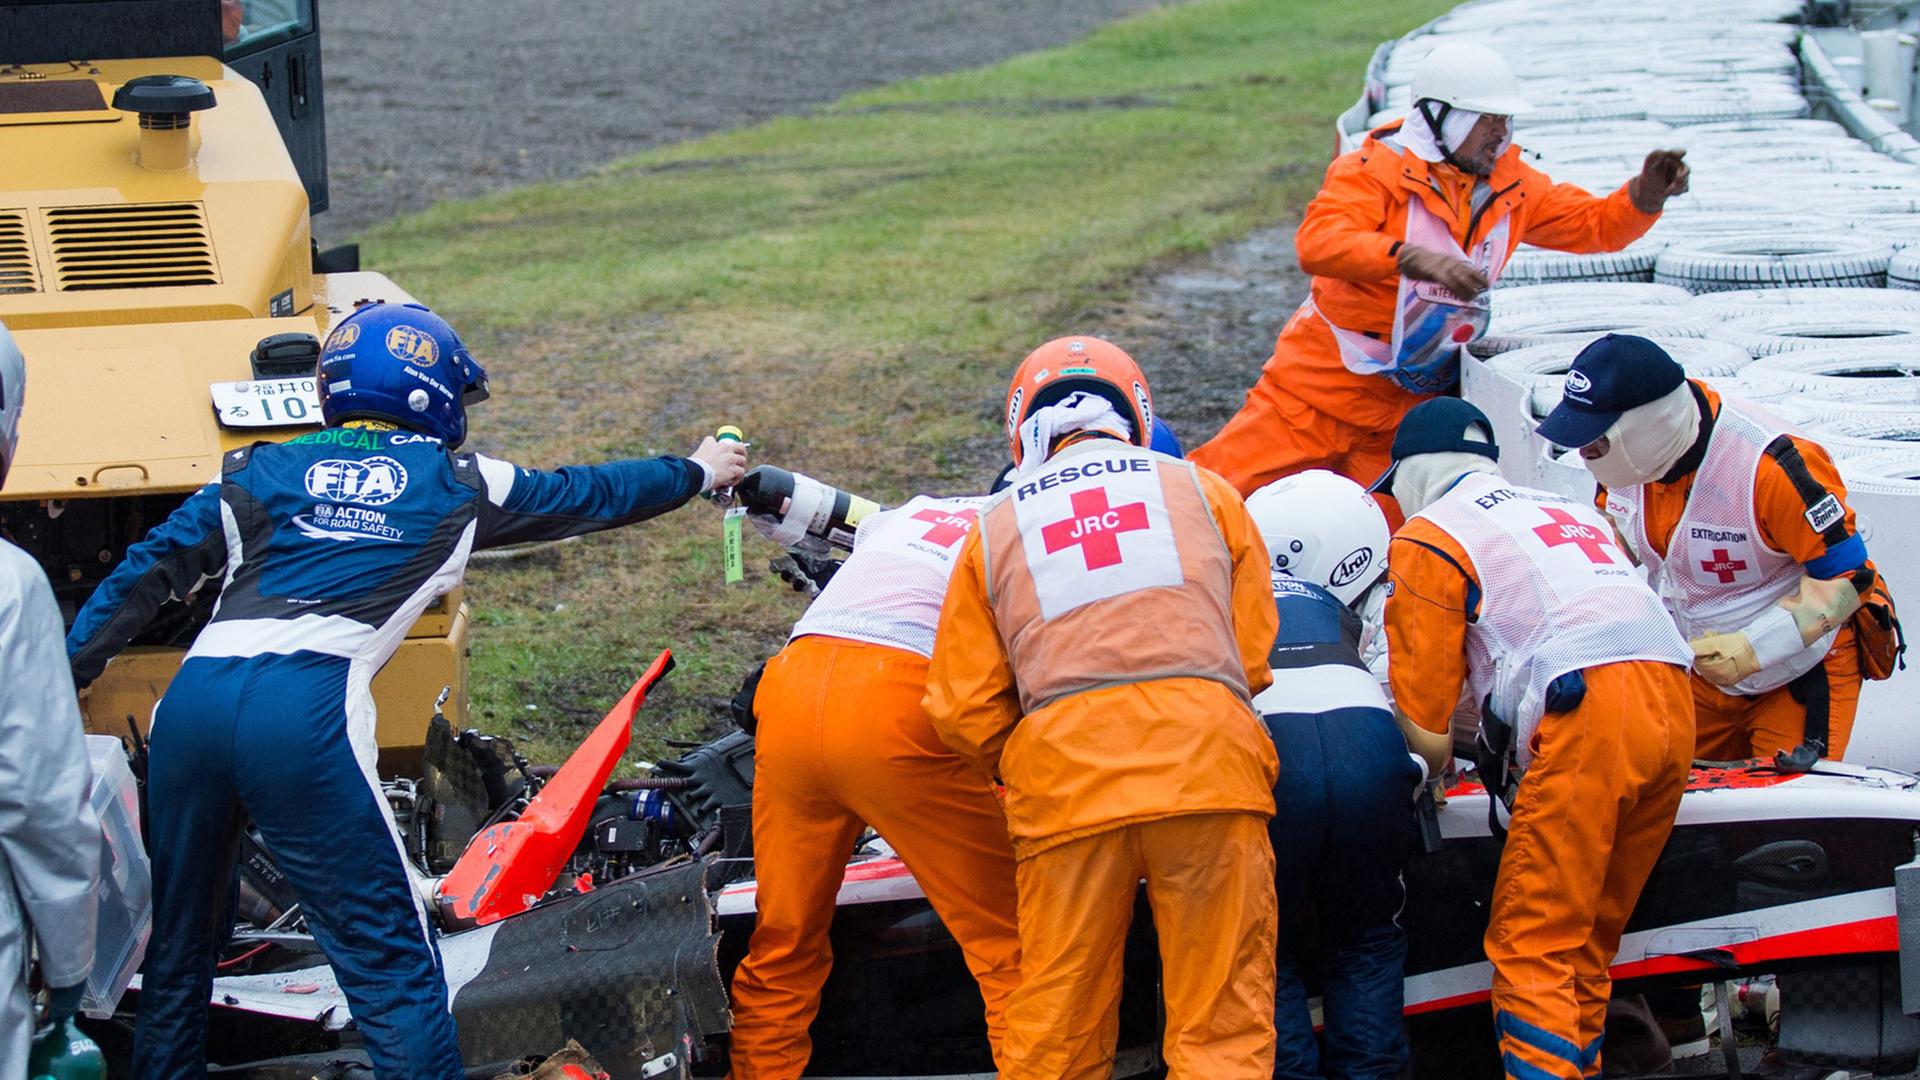 Formel-1-Fahrer Jules Bianchi wurde beim Rennen in Suzuka schwer verletzt. Beim verunglückten Wagen stehen zahlreiche Helfer und Ärzte und leisten erste Hilfe